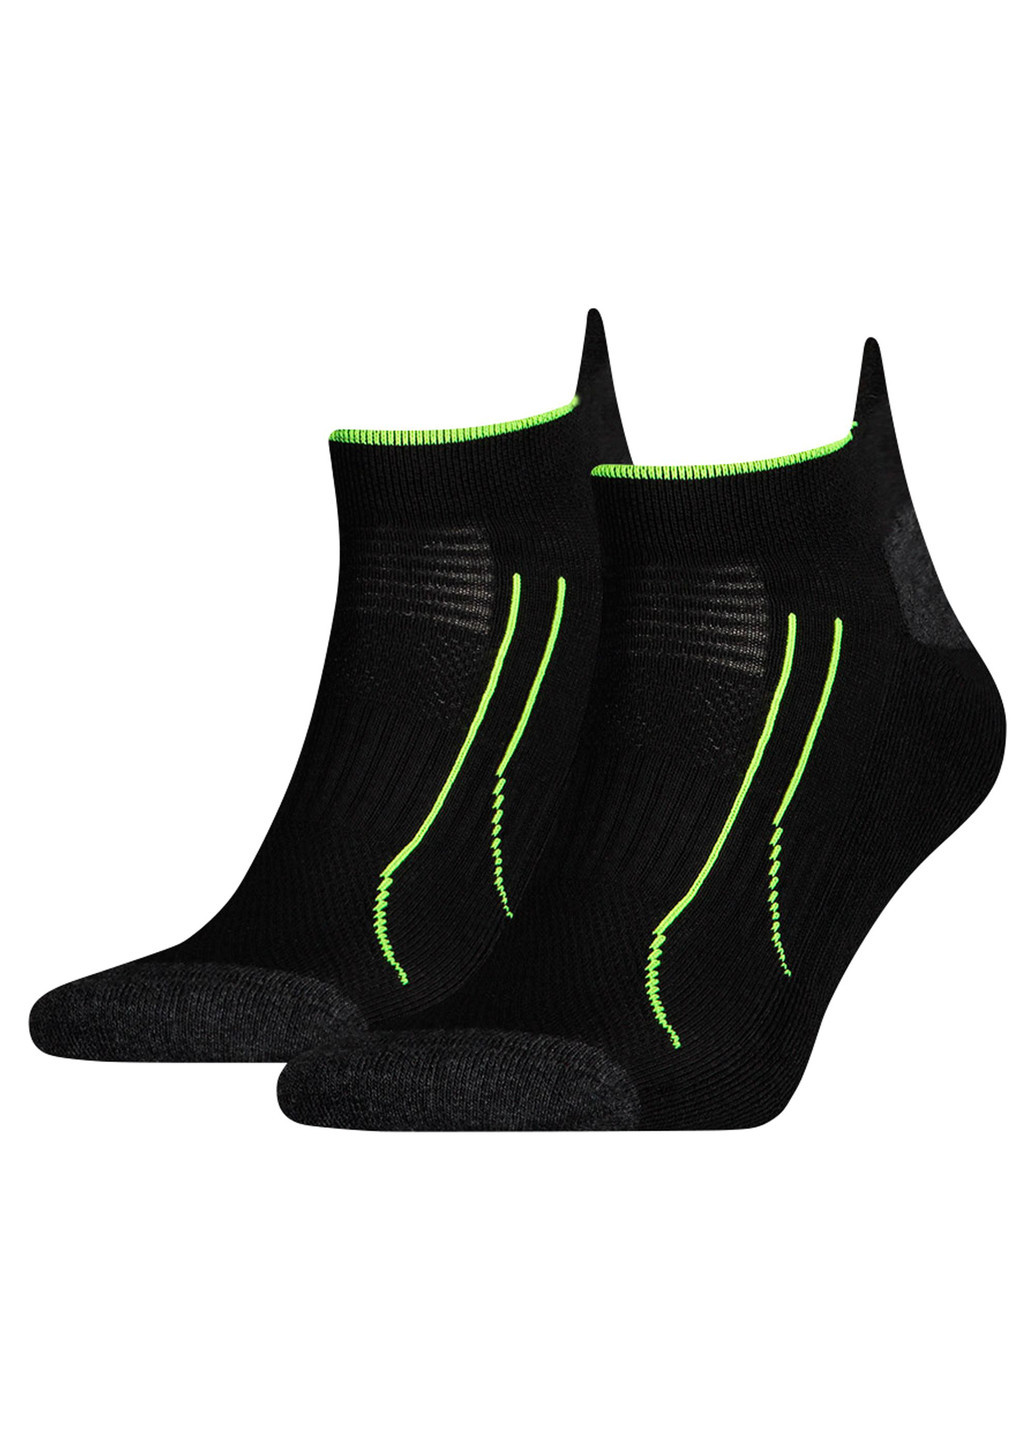 Носки Puma Cell Trainer Socks комбинированные спортивные